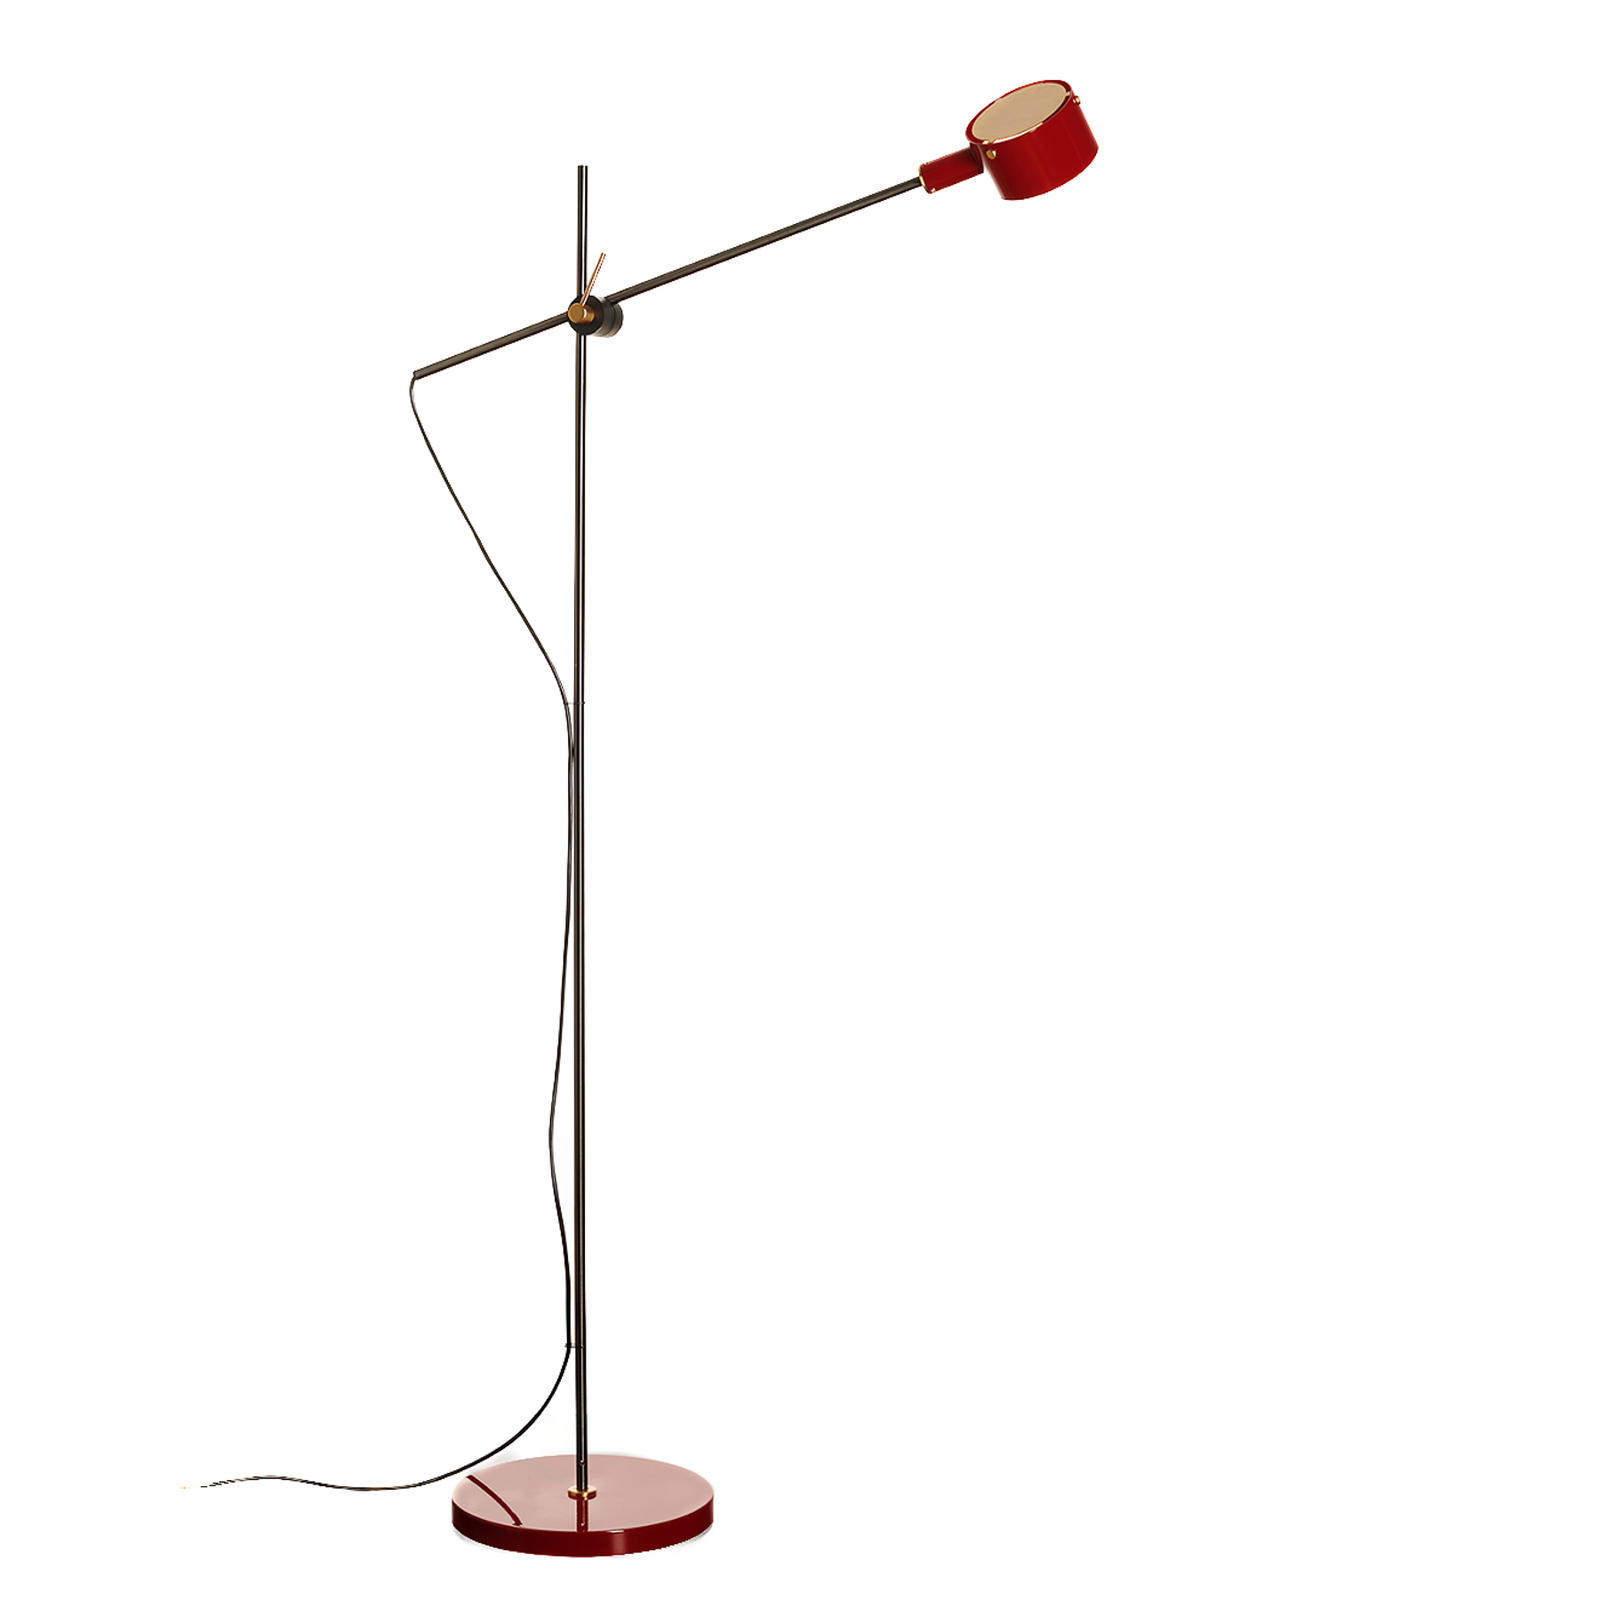 Oluce G.O. 352 LED floor lamp, scarlet